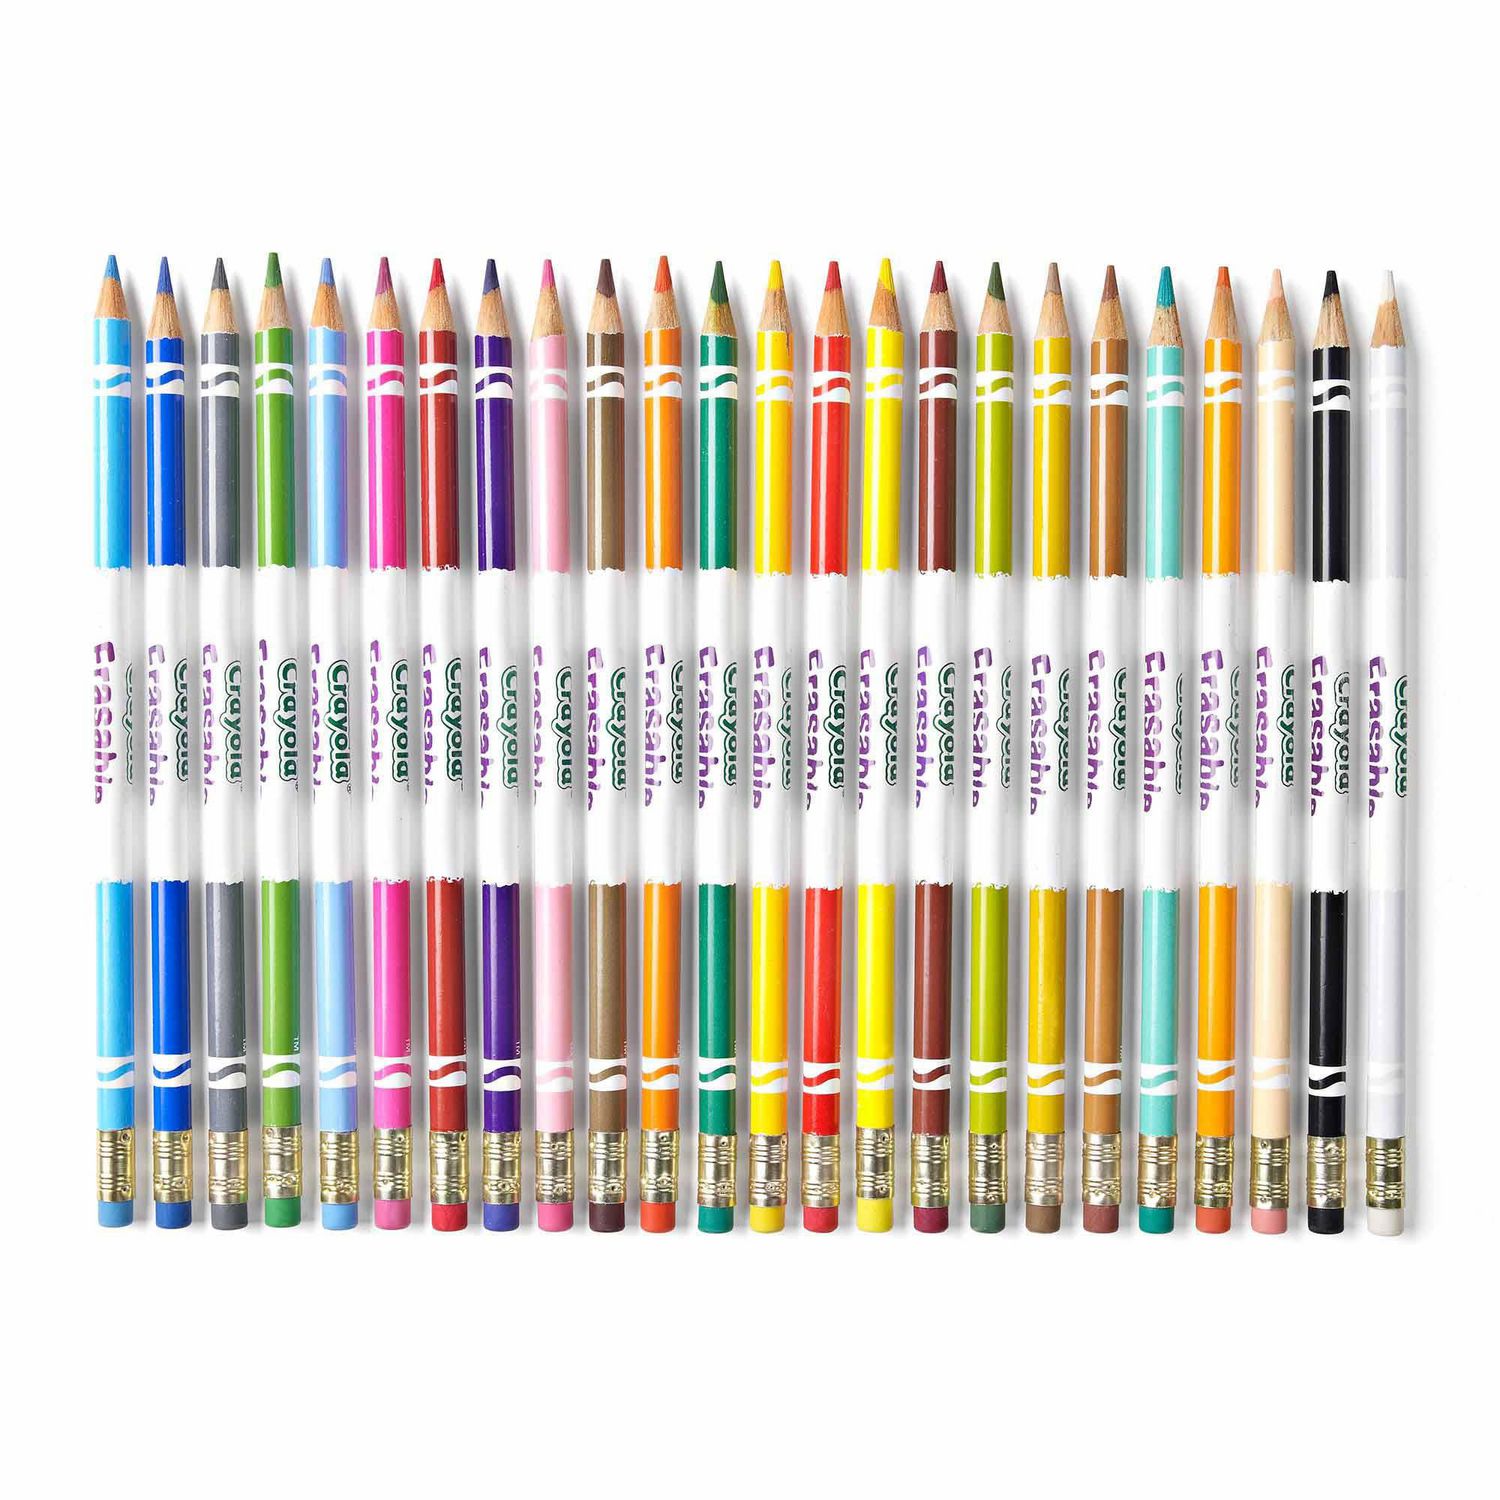 Ens. 24 crayons de couleur sans bois